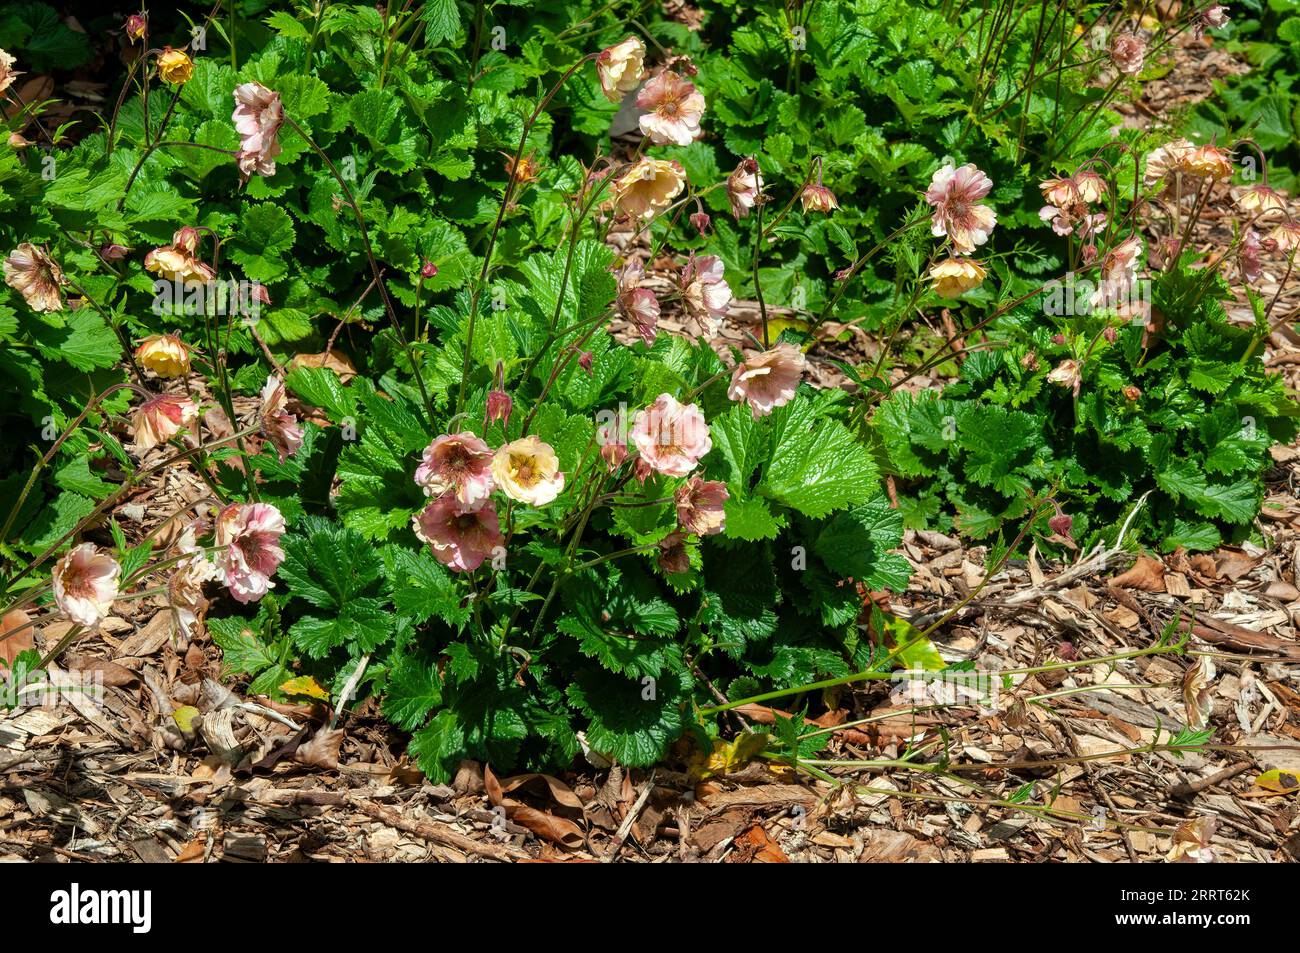 Sydney Australia, wilting geum flowers in garden Stock Photo